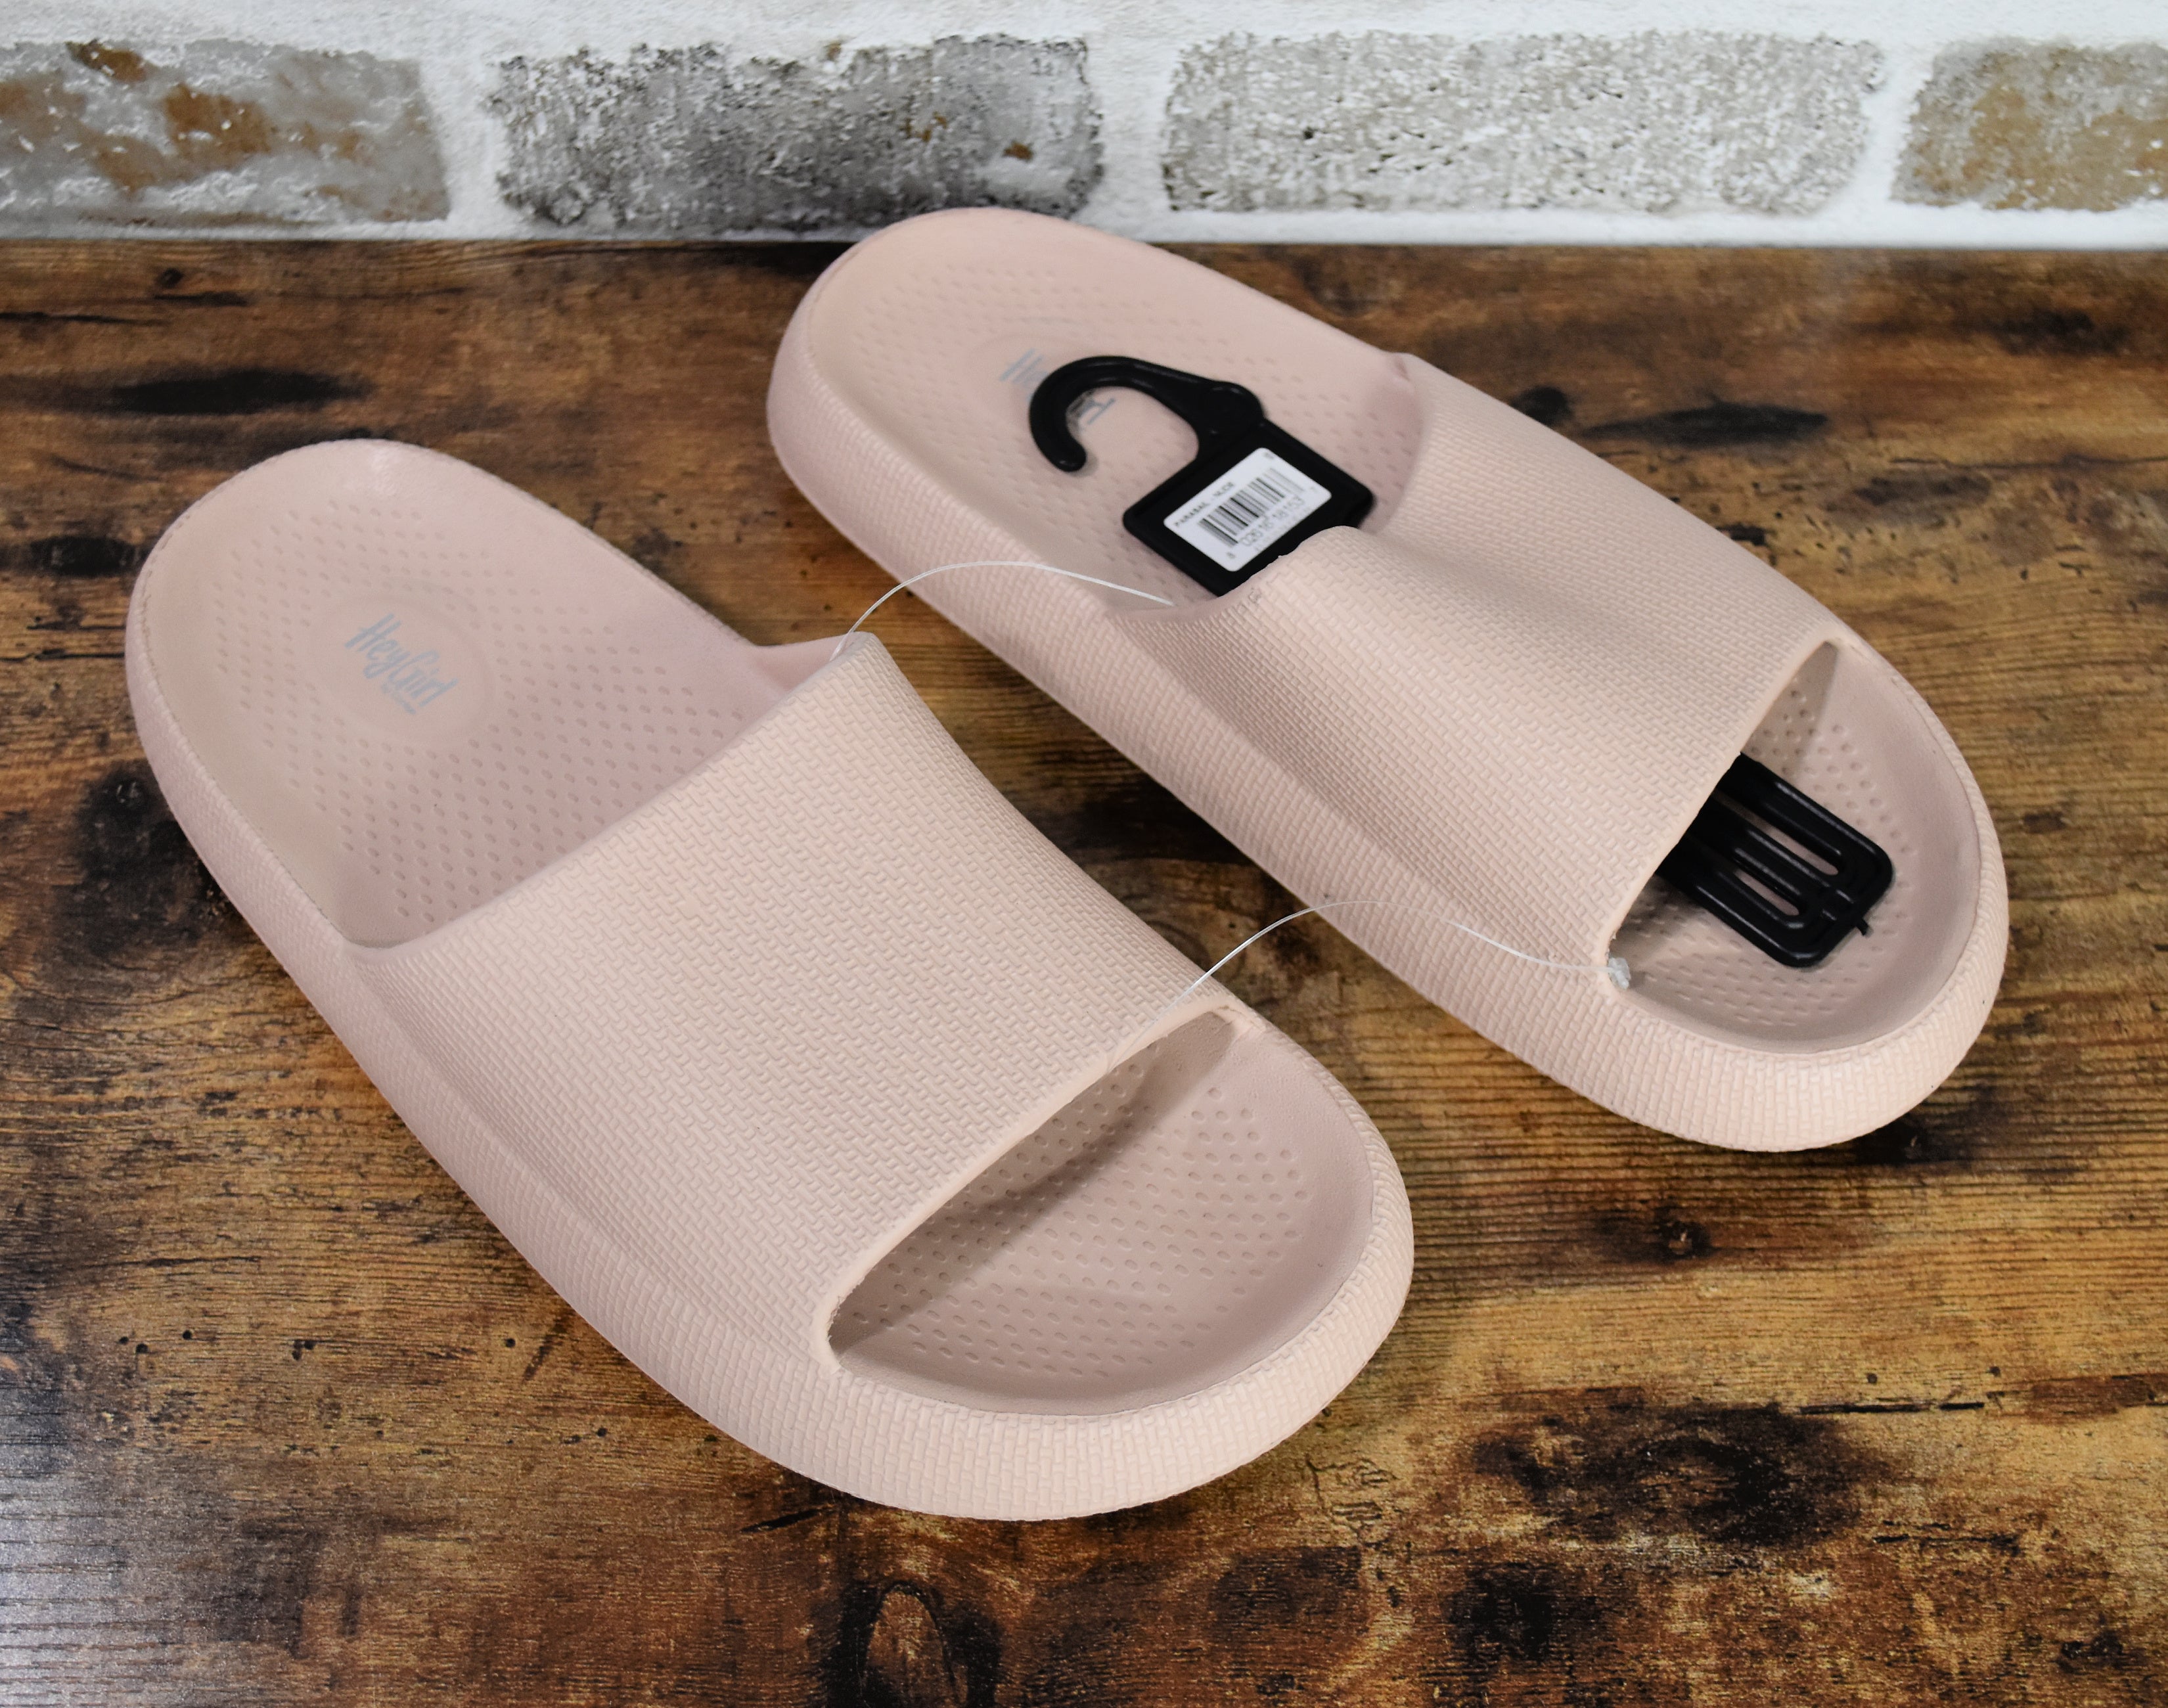 Corkys Nude Parasail Slip-On Waterproof Slide Sandals